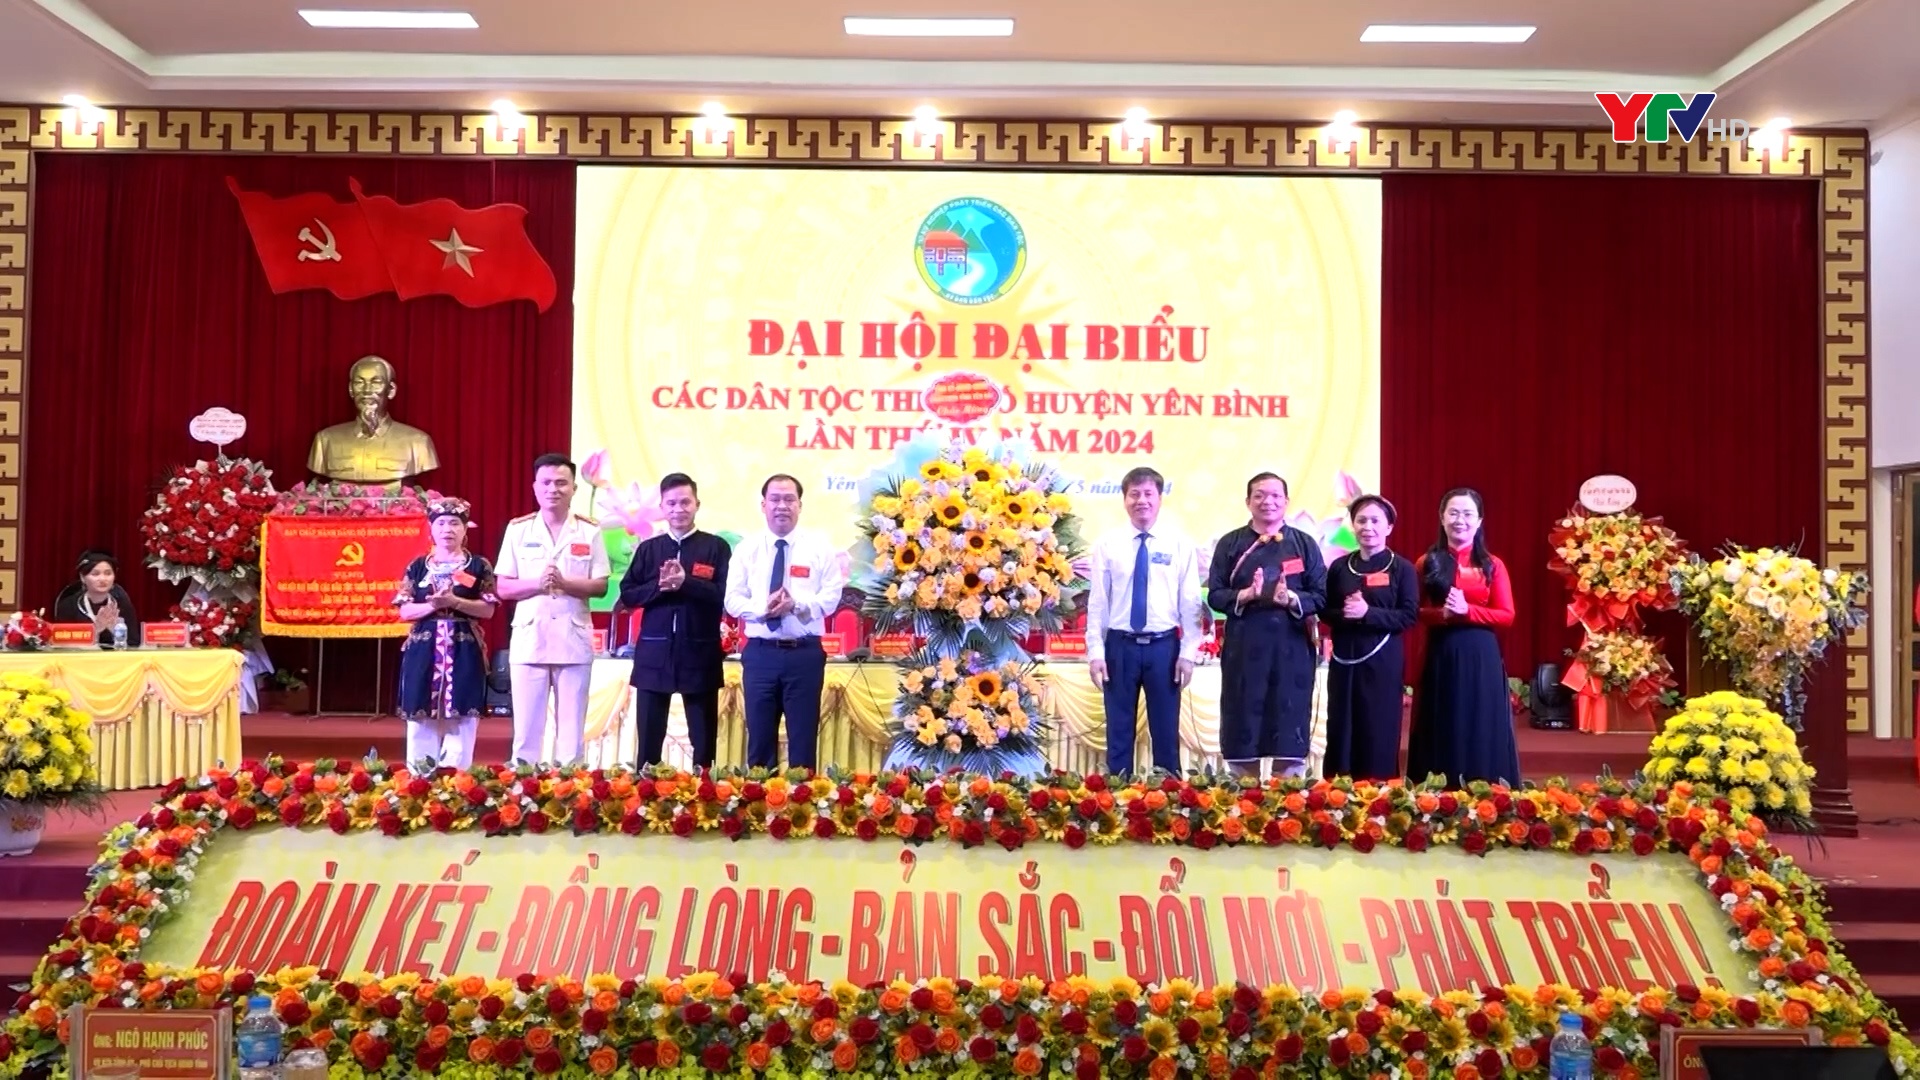 Đại hội đại biểu các dân tộc thiểu số huyện Yên Bình lần thứ IV năm 2024